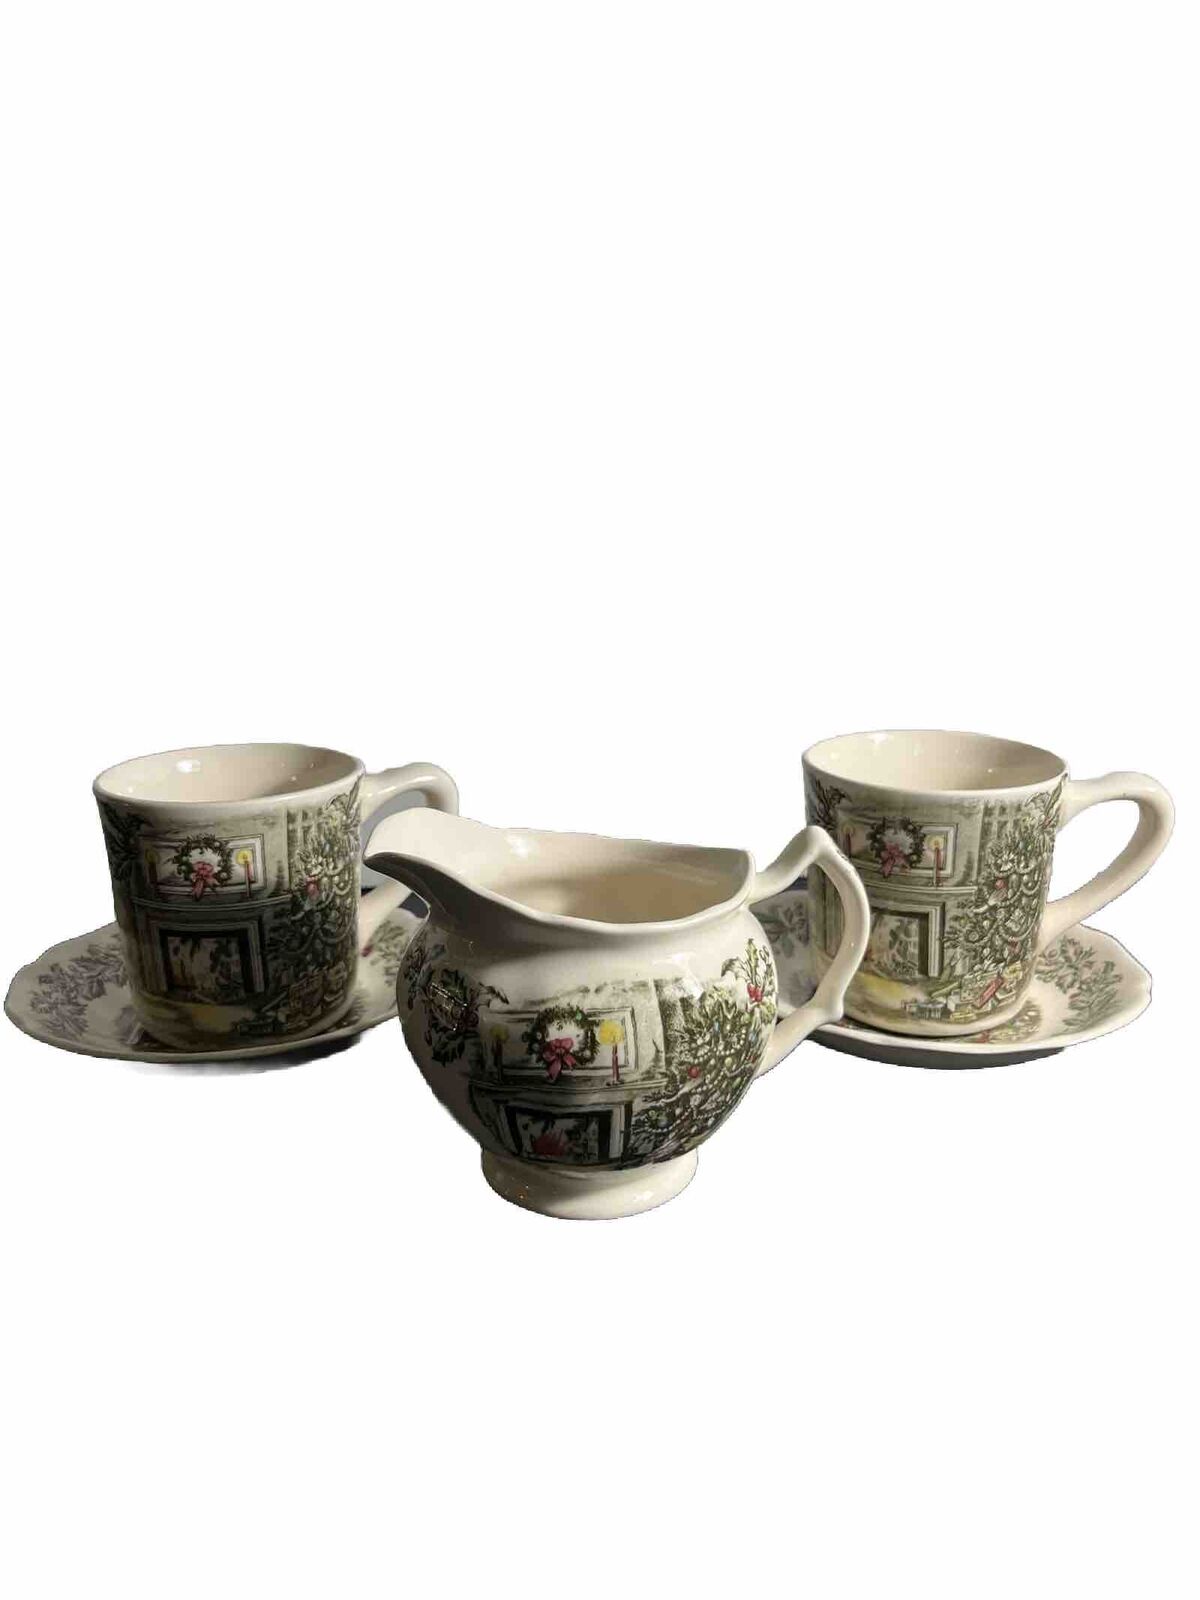 Vintage Johnson Brothers Christmas Set, Saucers, Mugs , And Teapot